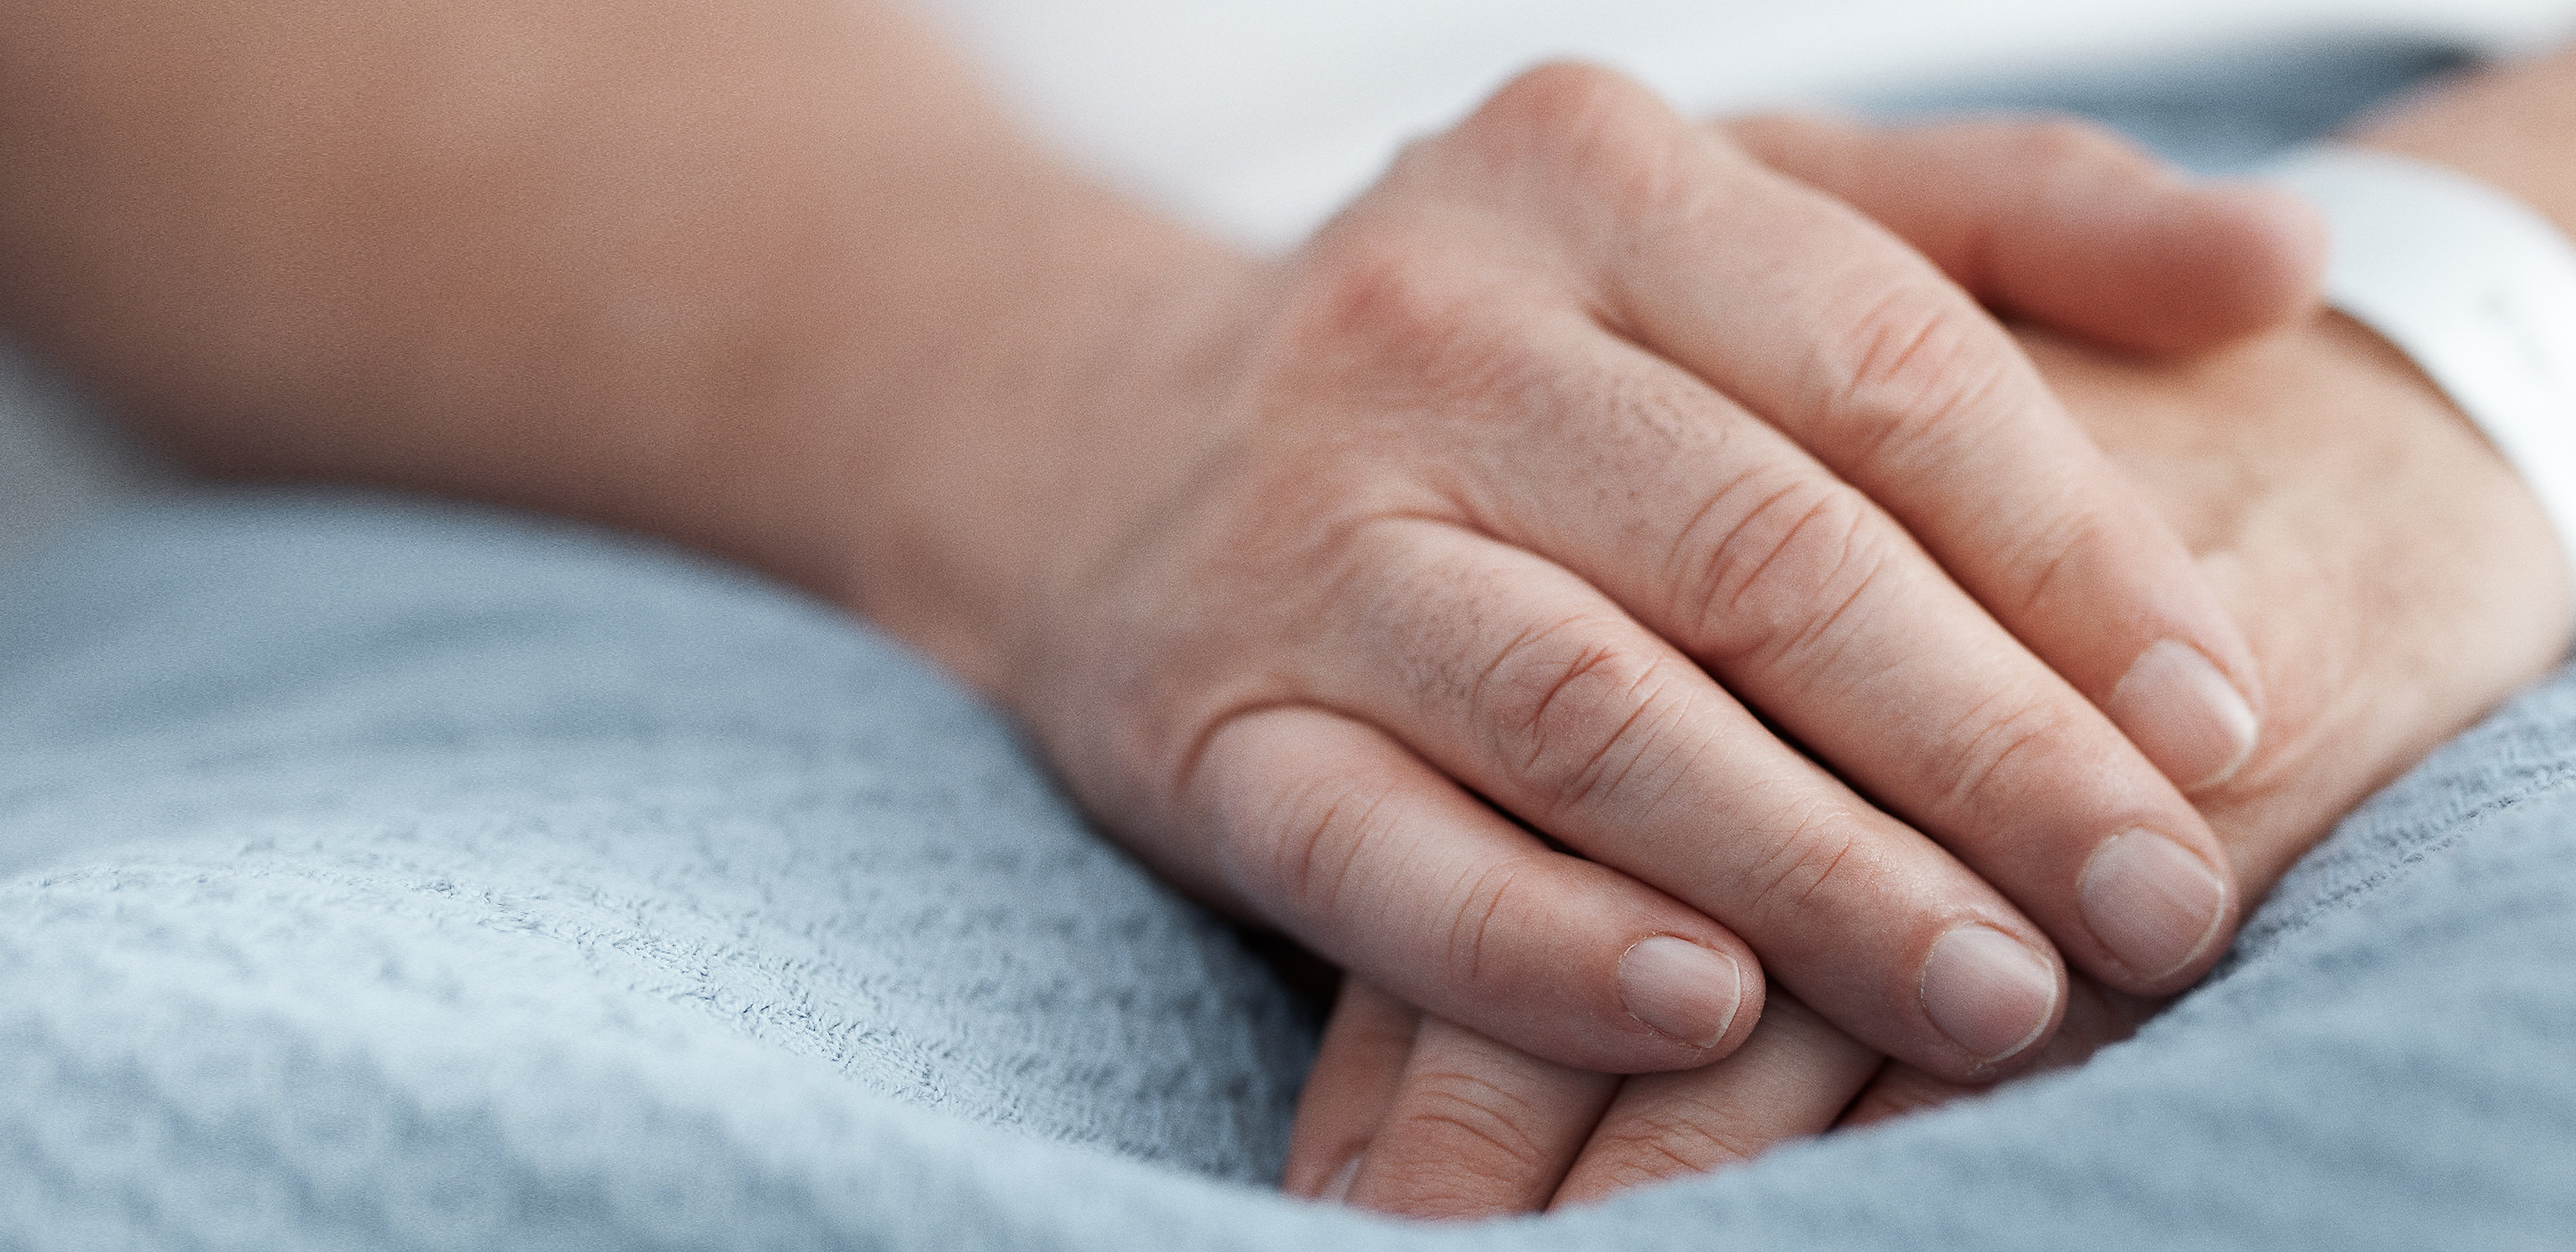 As mãos de um paciente descansam pacificamente sobre o cobertor em uma cama de hospital